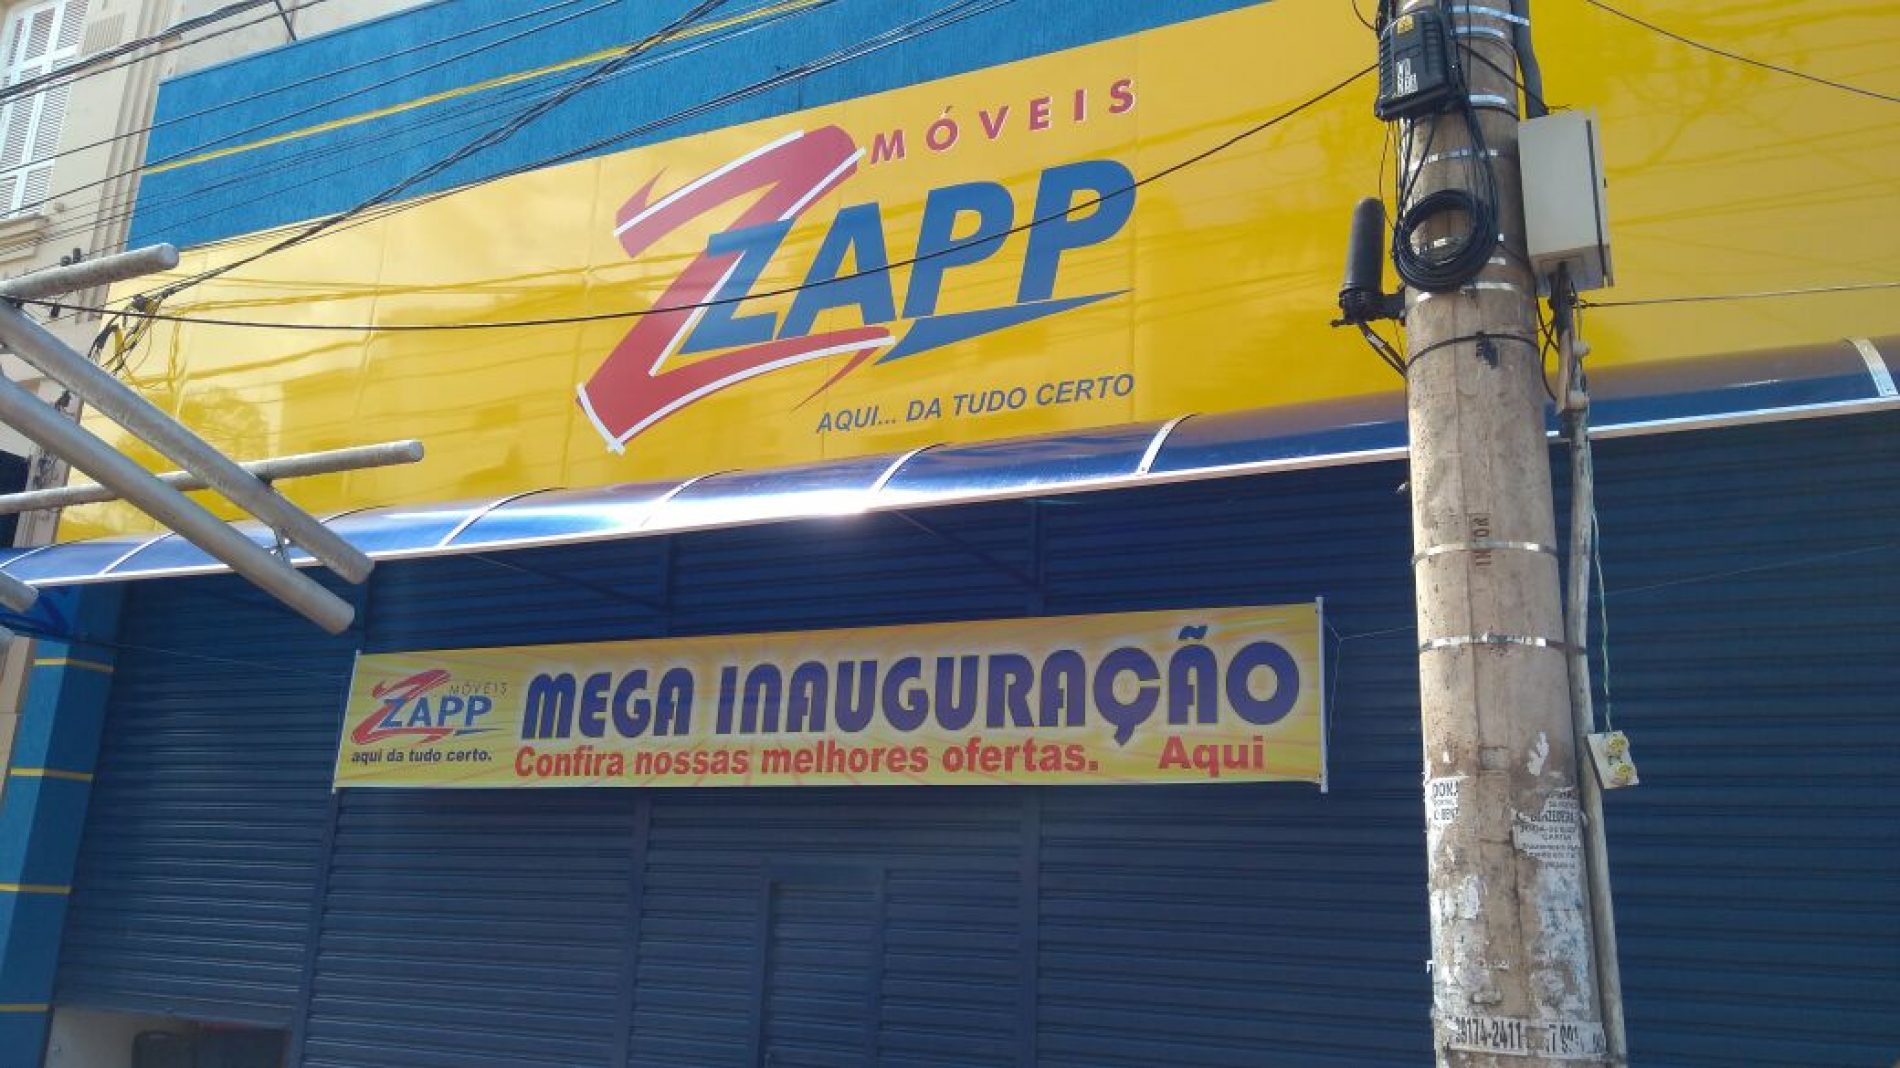 Móveis Zapp inaugura nova loja e gera empregos em Barretos